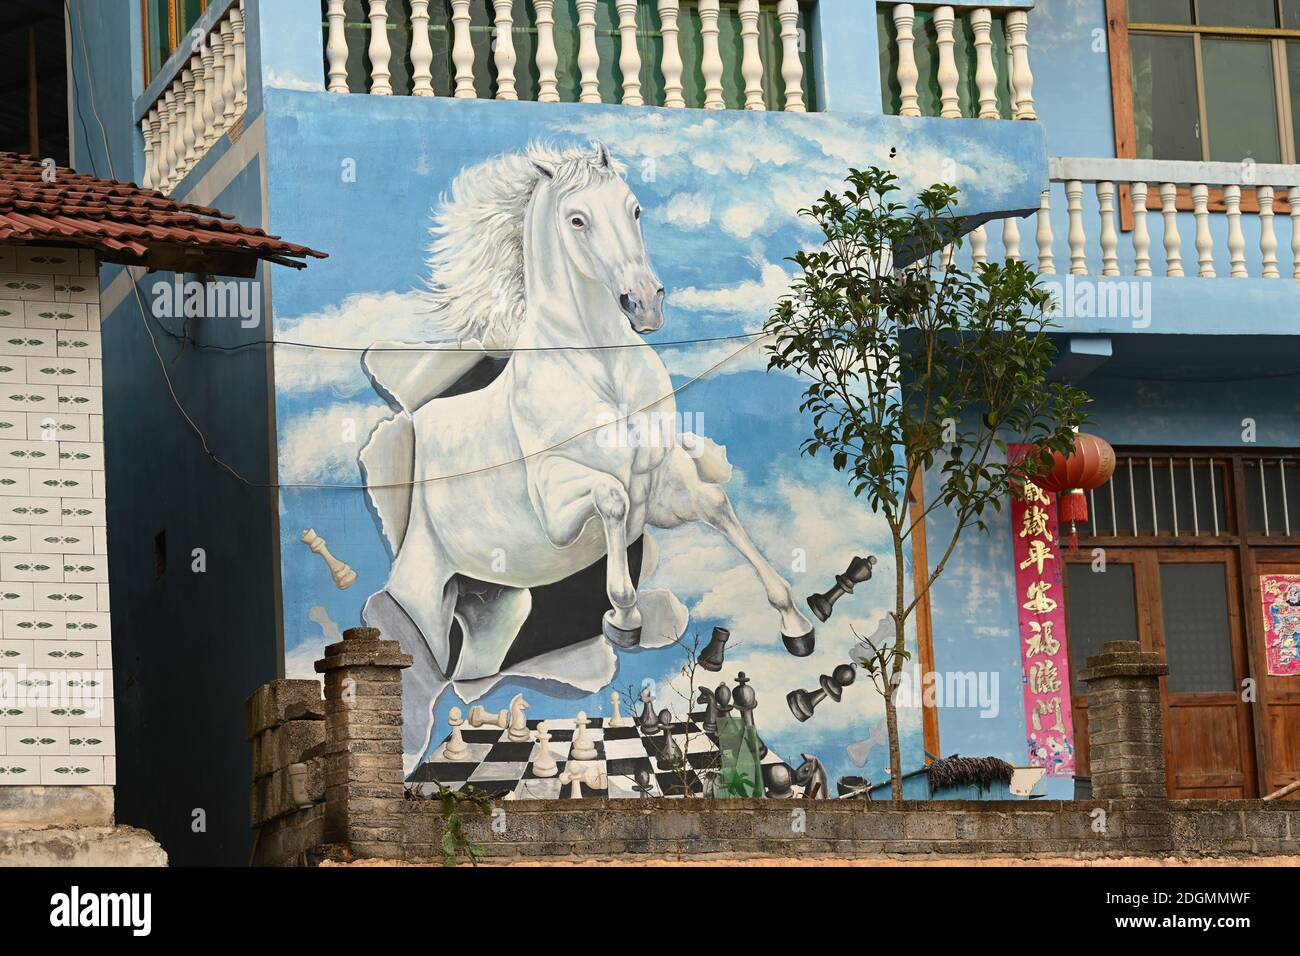 Die Wände der Häuser in einem Dorf sind mit bunten Graffiti bemalt und kombinieren traditionelle Dörfer mit moderner Kunst in Tongren Stadt, im Südwesten Chinas Stockfoto